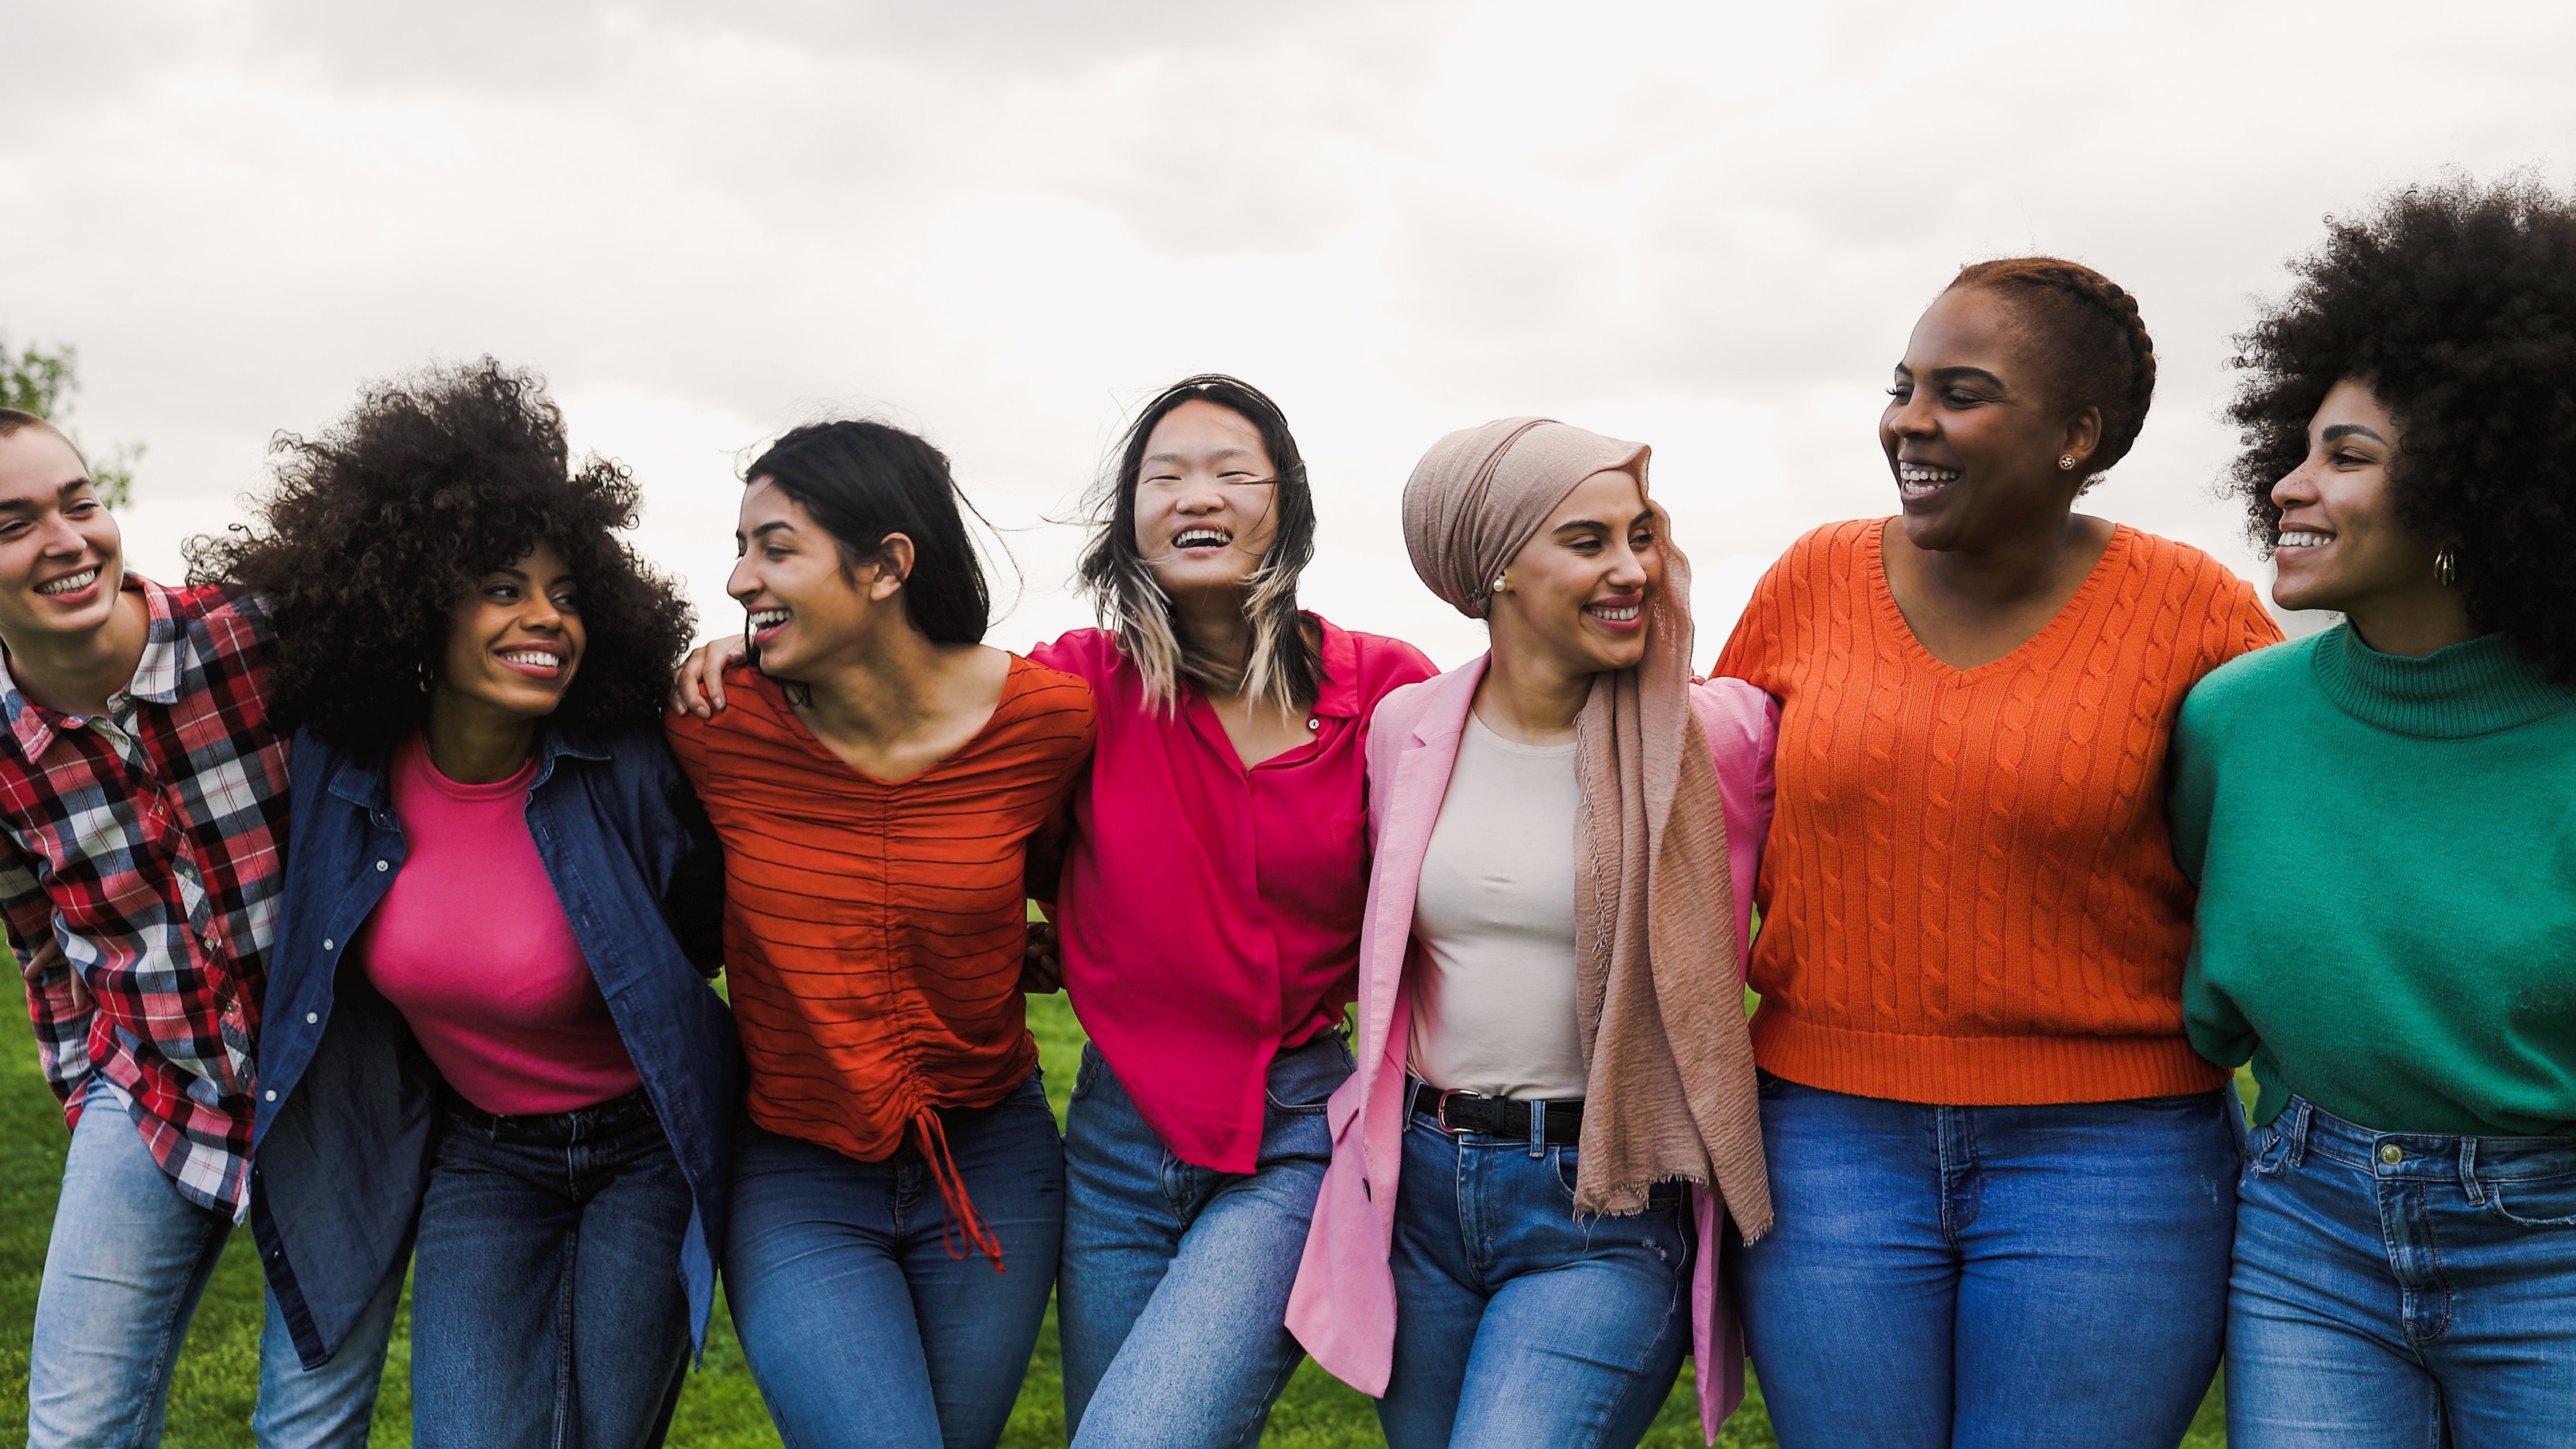 Sept femmes de différentes origines se tiennent bras dessus dessous en plein air. Elles portent des vêtements aux couleurs vives et sont souriantes.